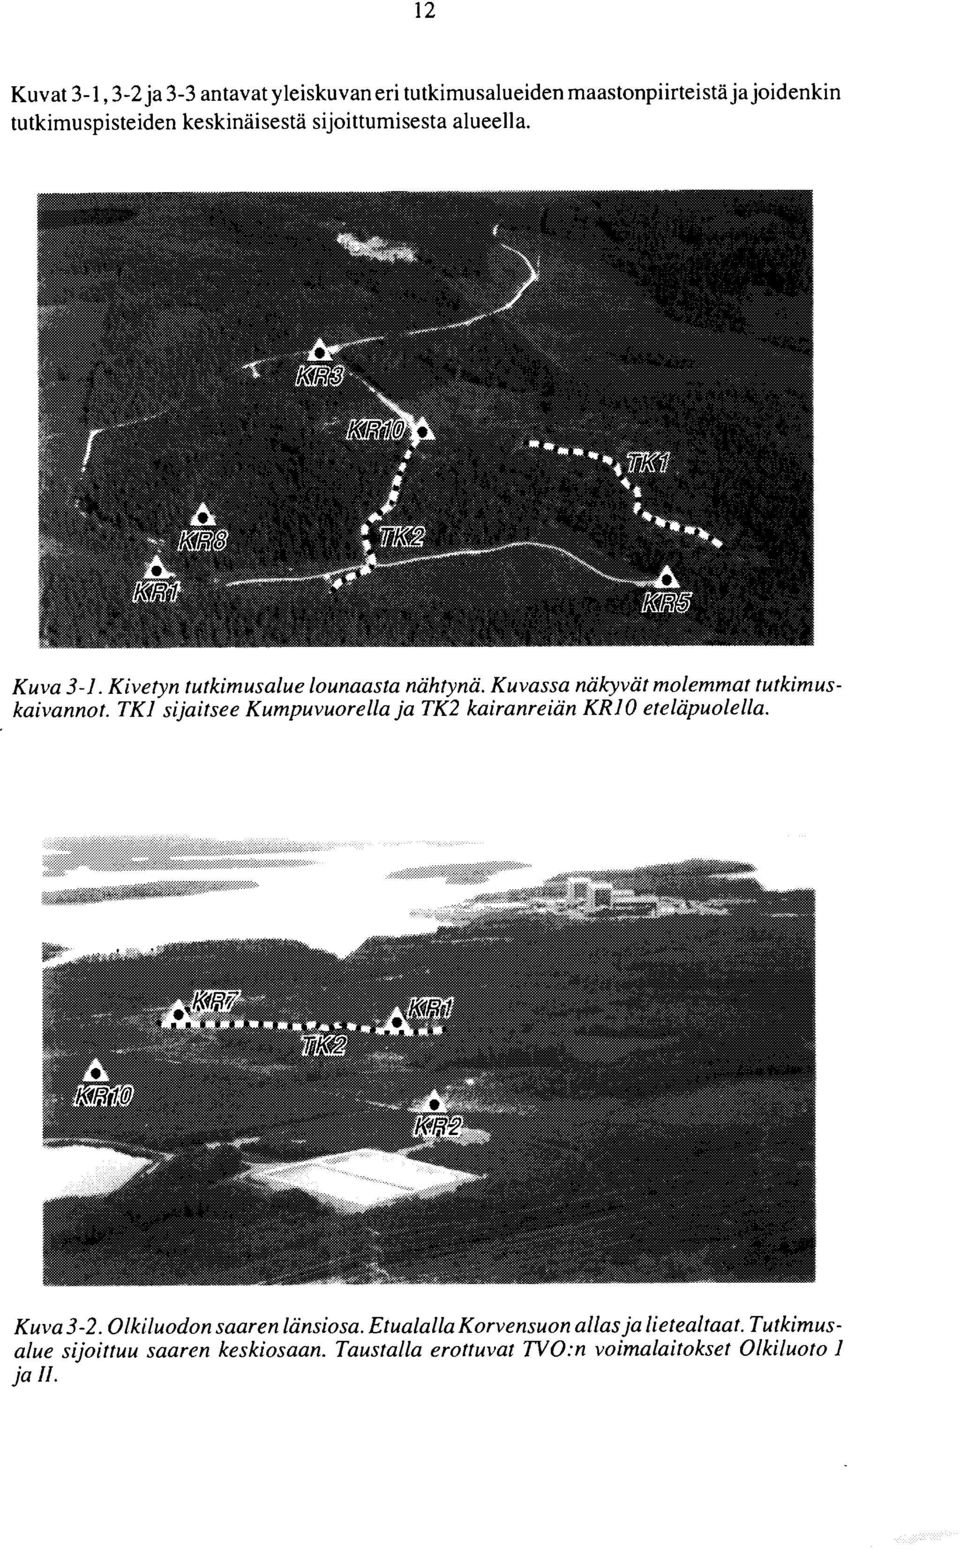 Kuvassa näkyvät molemmat tutkimuskaivannot. TKl sijaitsee Kumpuvuorella ja TK2 kairanreiän KR 10 eteläpuolella. -2.